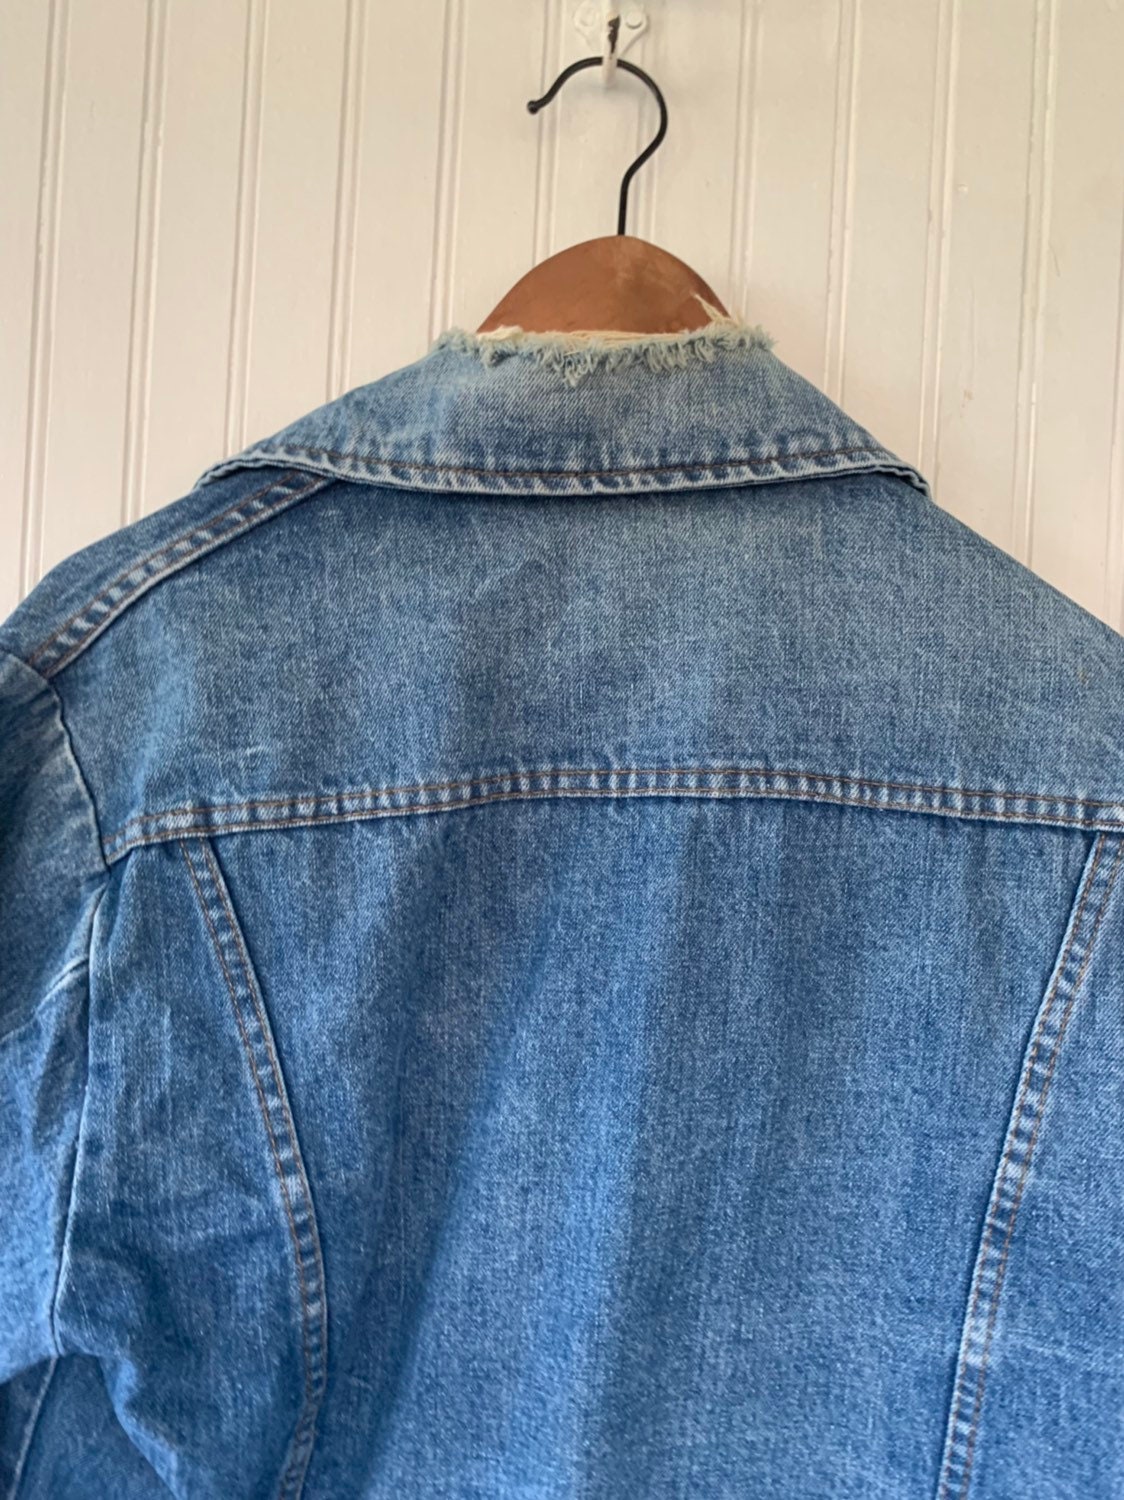 Vintage 80s Roebucks Blue Jean Jacket Denim Coat Worn In Size Large L Med M  LG Rare Eighties XL Grunge Sears